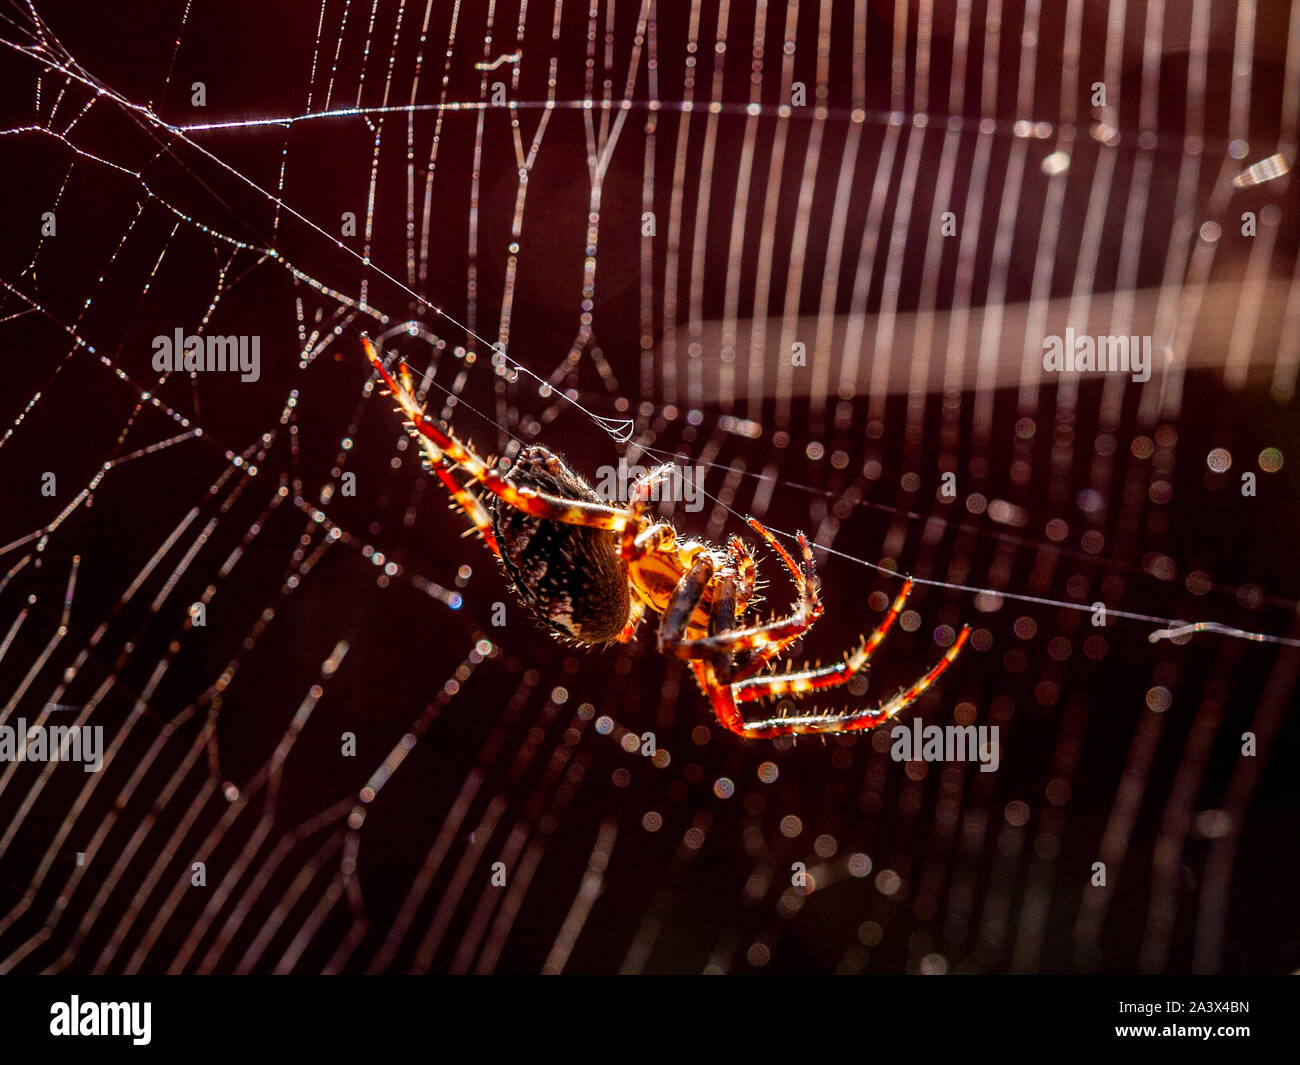 Araña de jardín pende de un hilo en la luz del sol con su web en el fondo. Puede verse la seda procedentes de sus hileras. Foto de stock